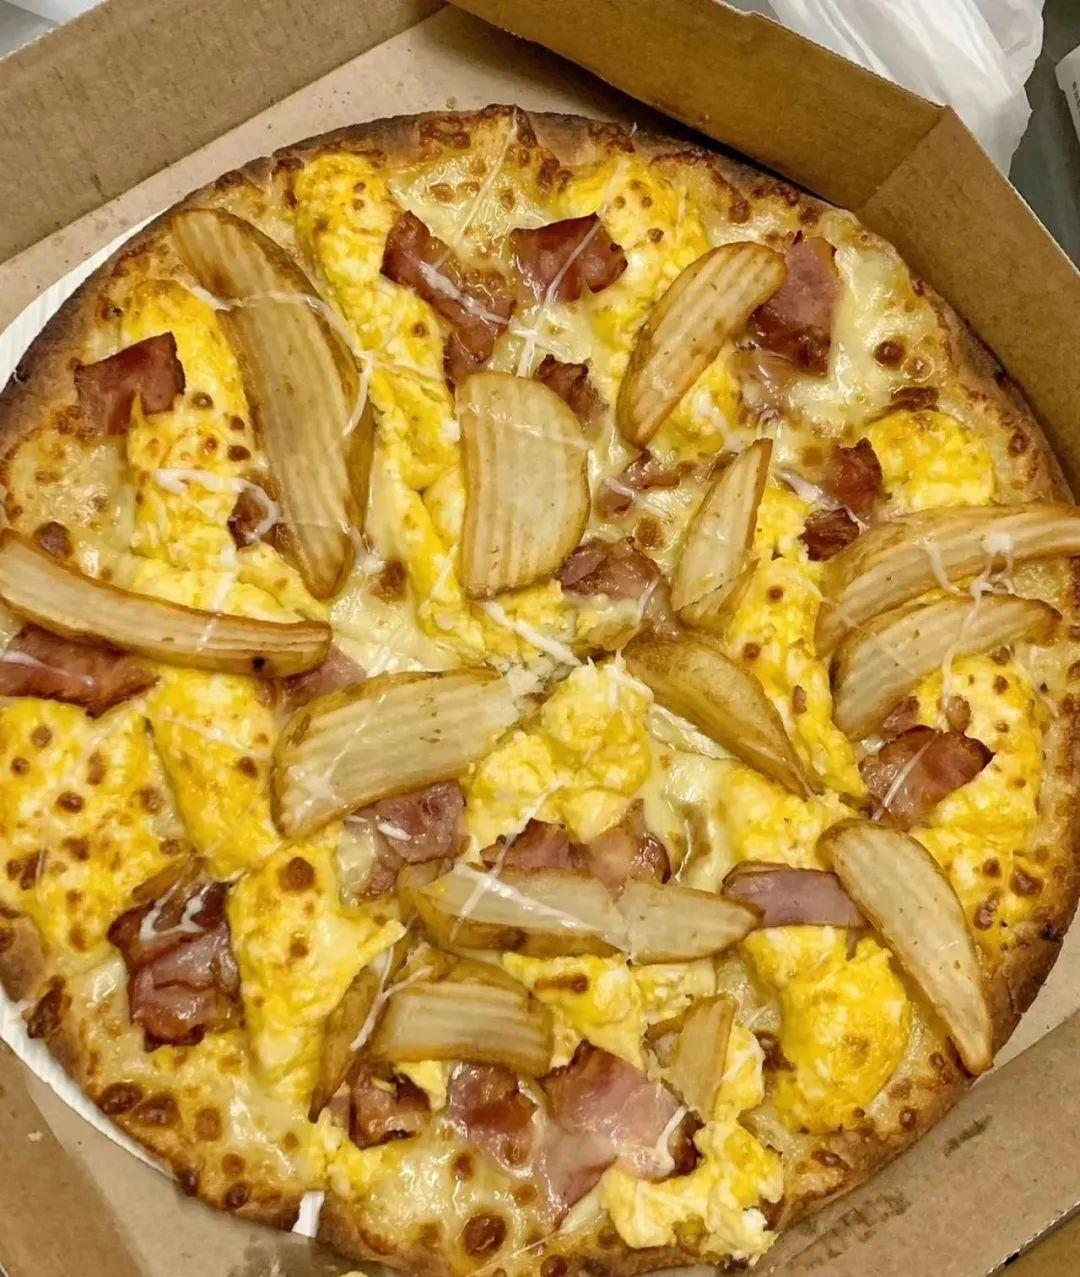 达美乐披萨哪款最好吃_达美乐披萨口味排名_达美乐披萨哪款最好吃知乎